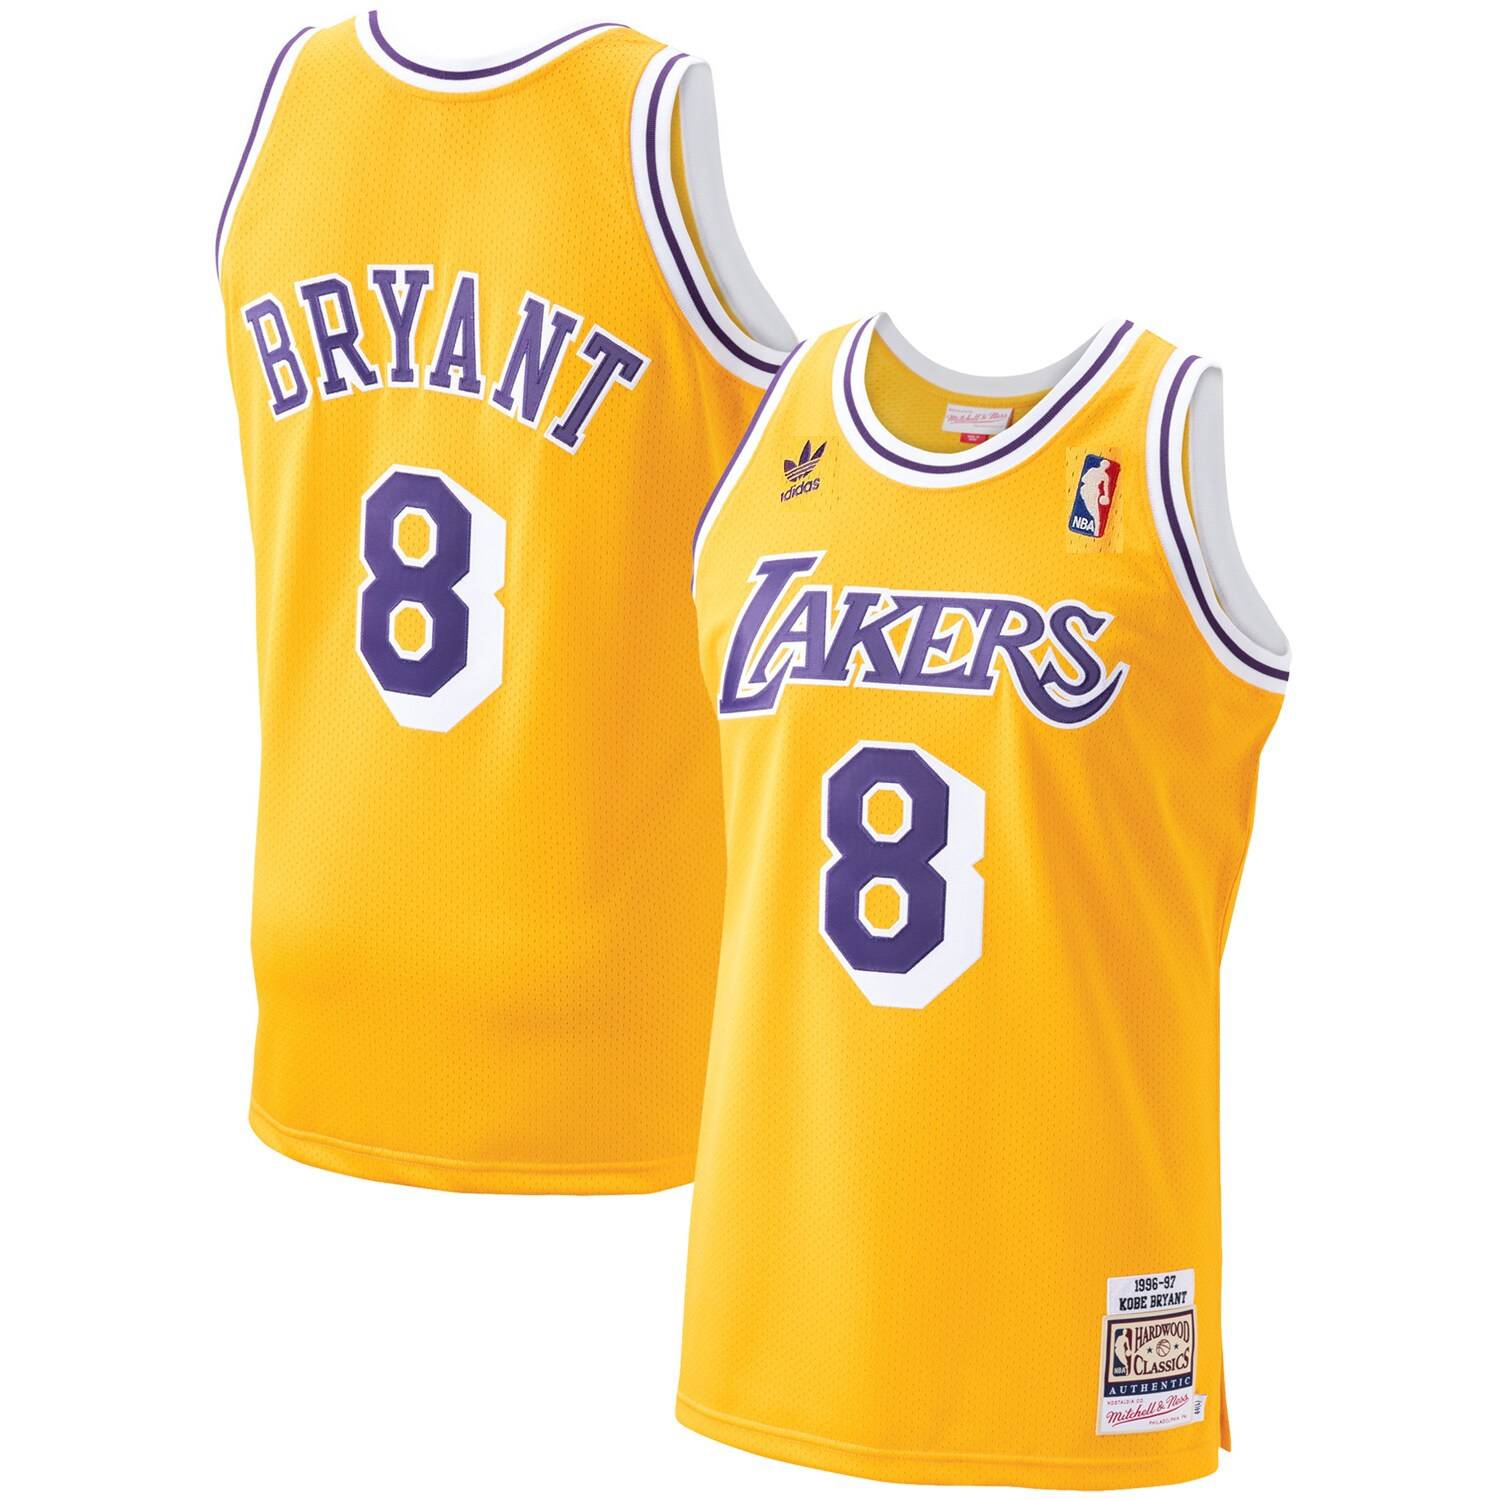 Camiseta Lakers - NBA, TOPS Y CAMISETAS, TOPS Y CAMISETAS, SPORT, MUJERES